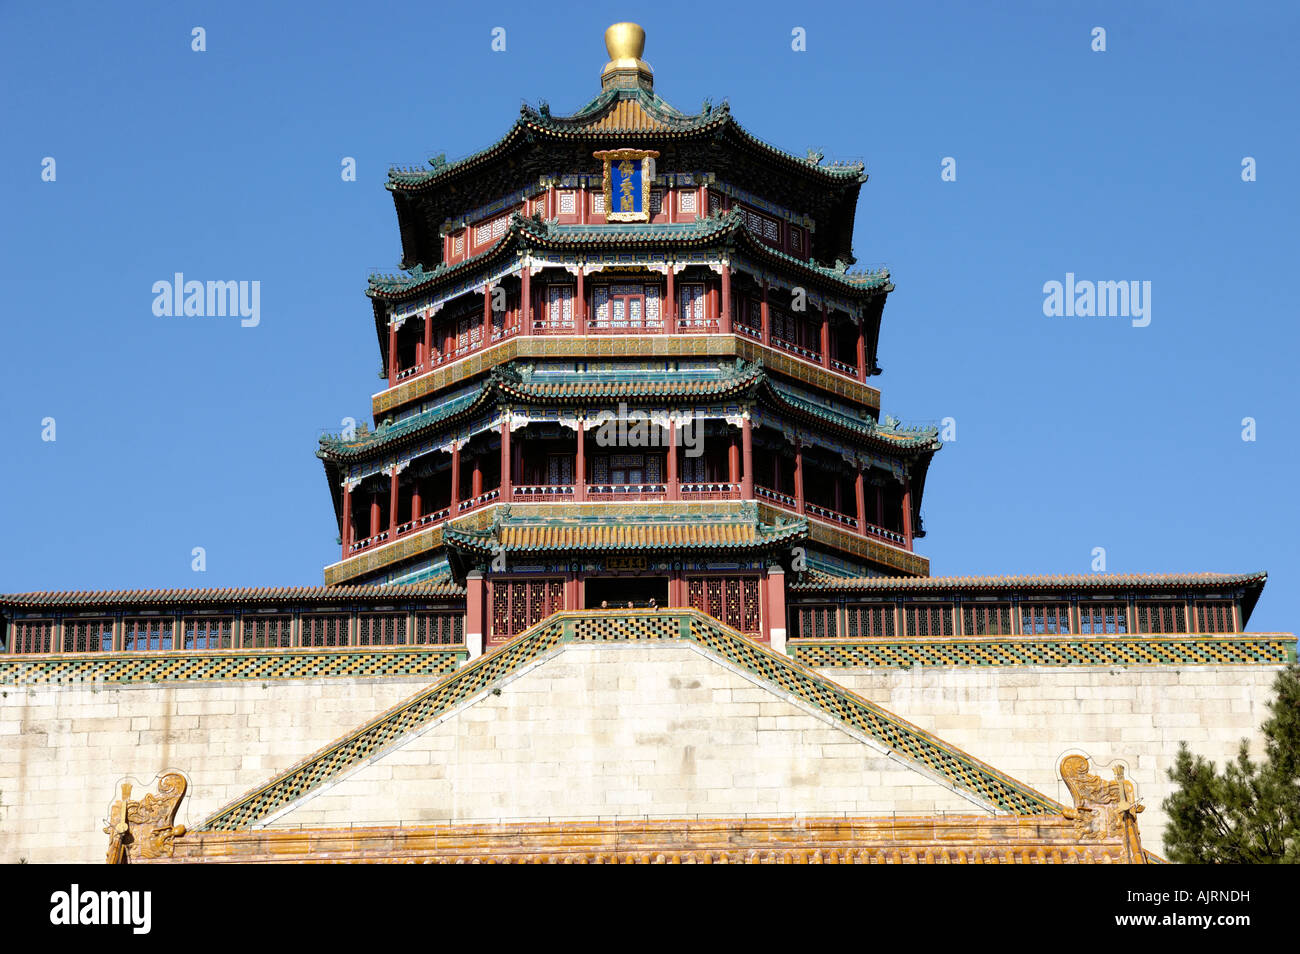 La Vertu bouddhiste Temple Summer Palace Beijing Chine 01 novembre 2007 Banque D'Images